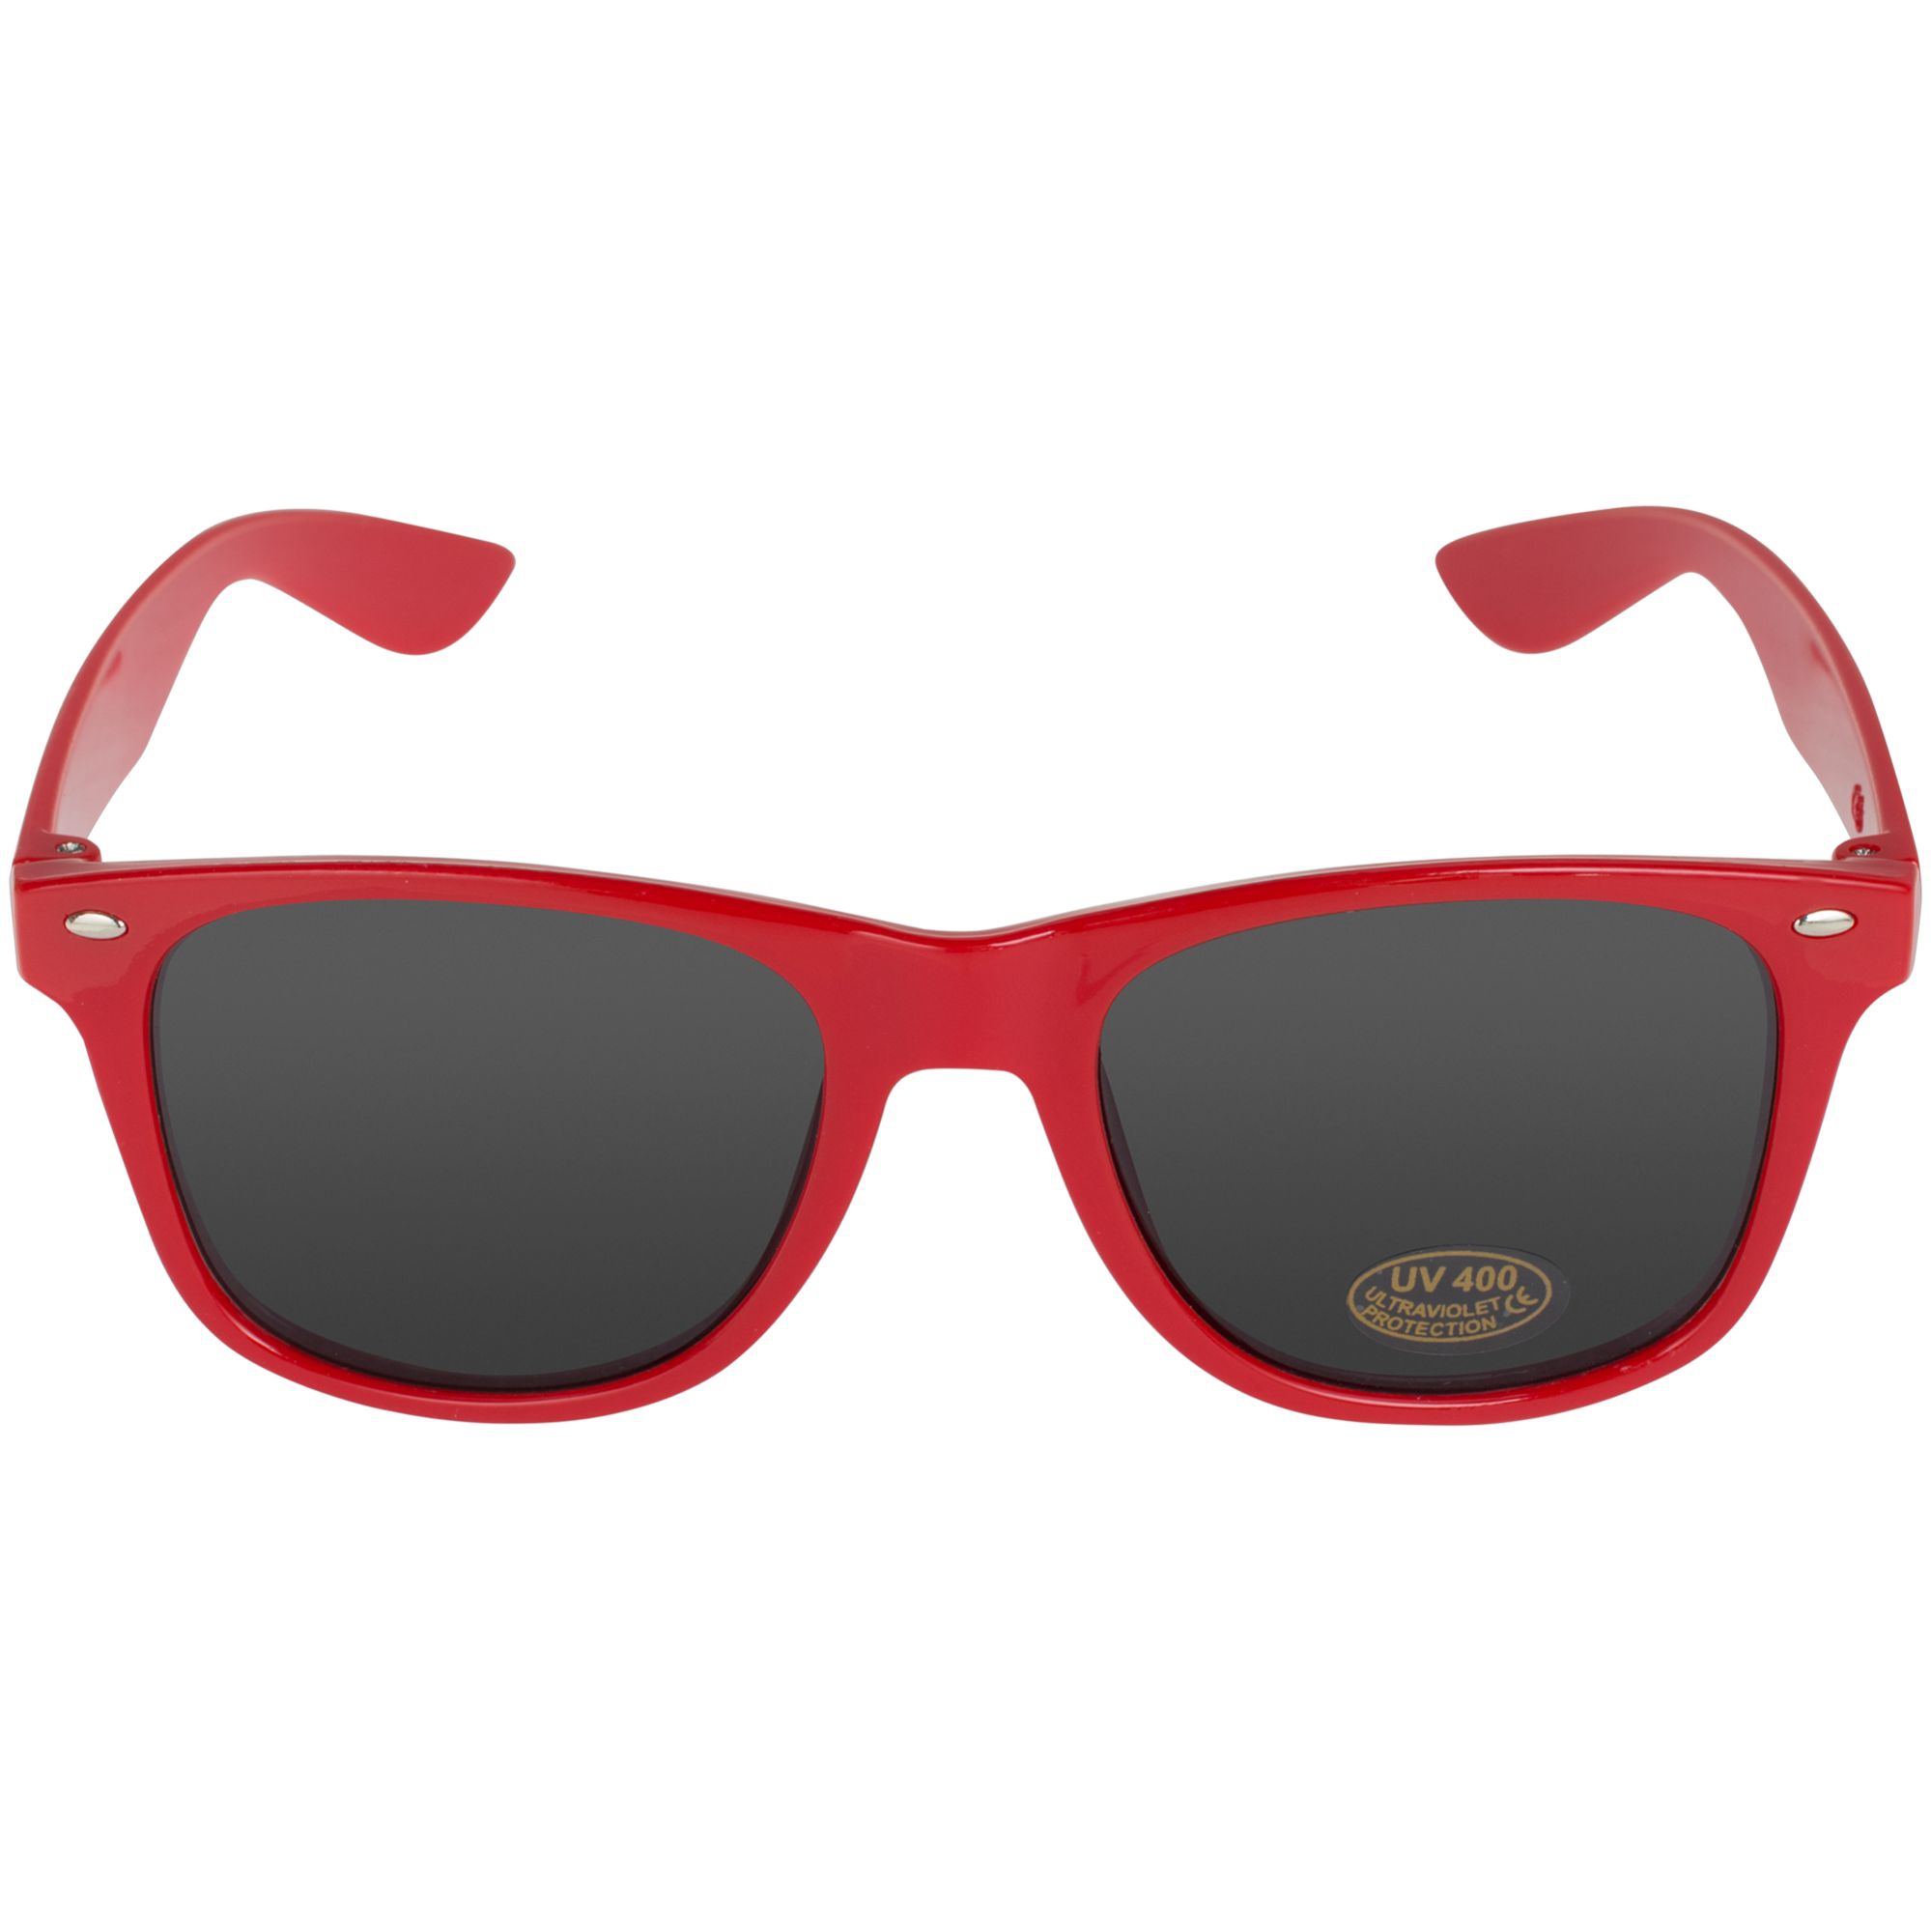 Мужские красные очки солнцезащитные. Очки солнцезащитные Sundance. Солнцезащитные очки uv400. Красные очки. Красные солнцезащитные очки.